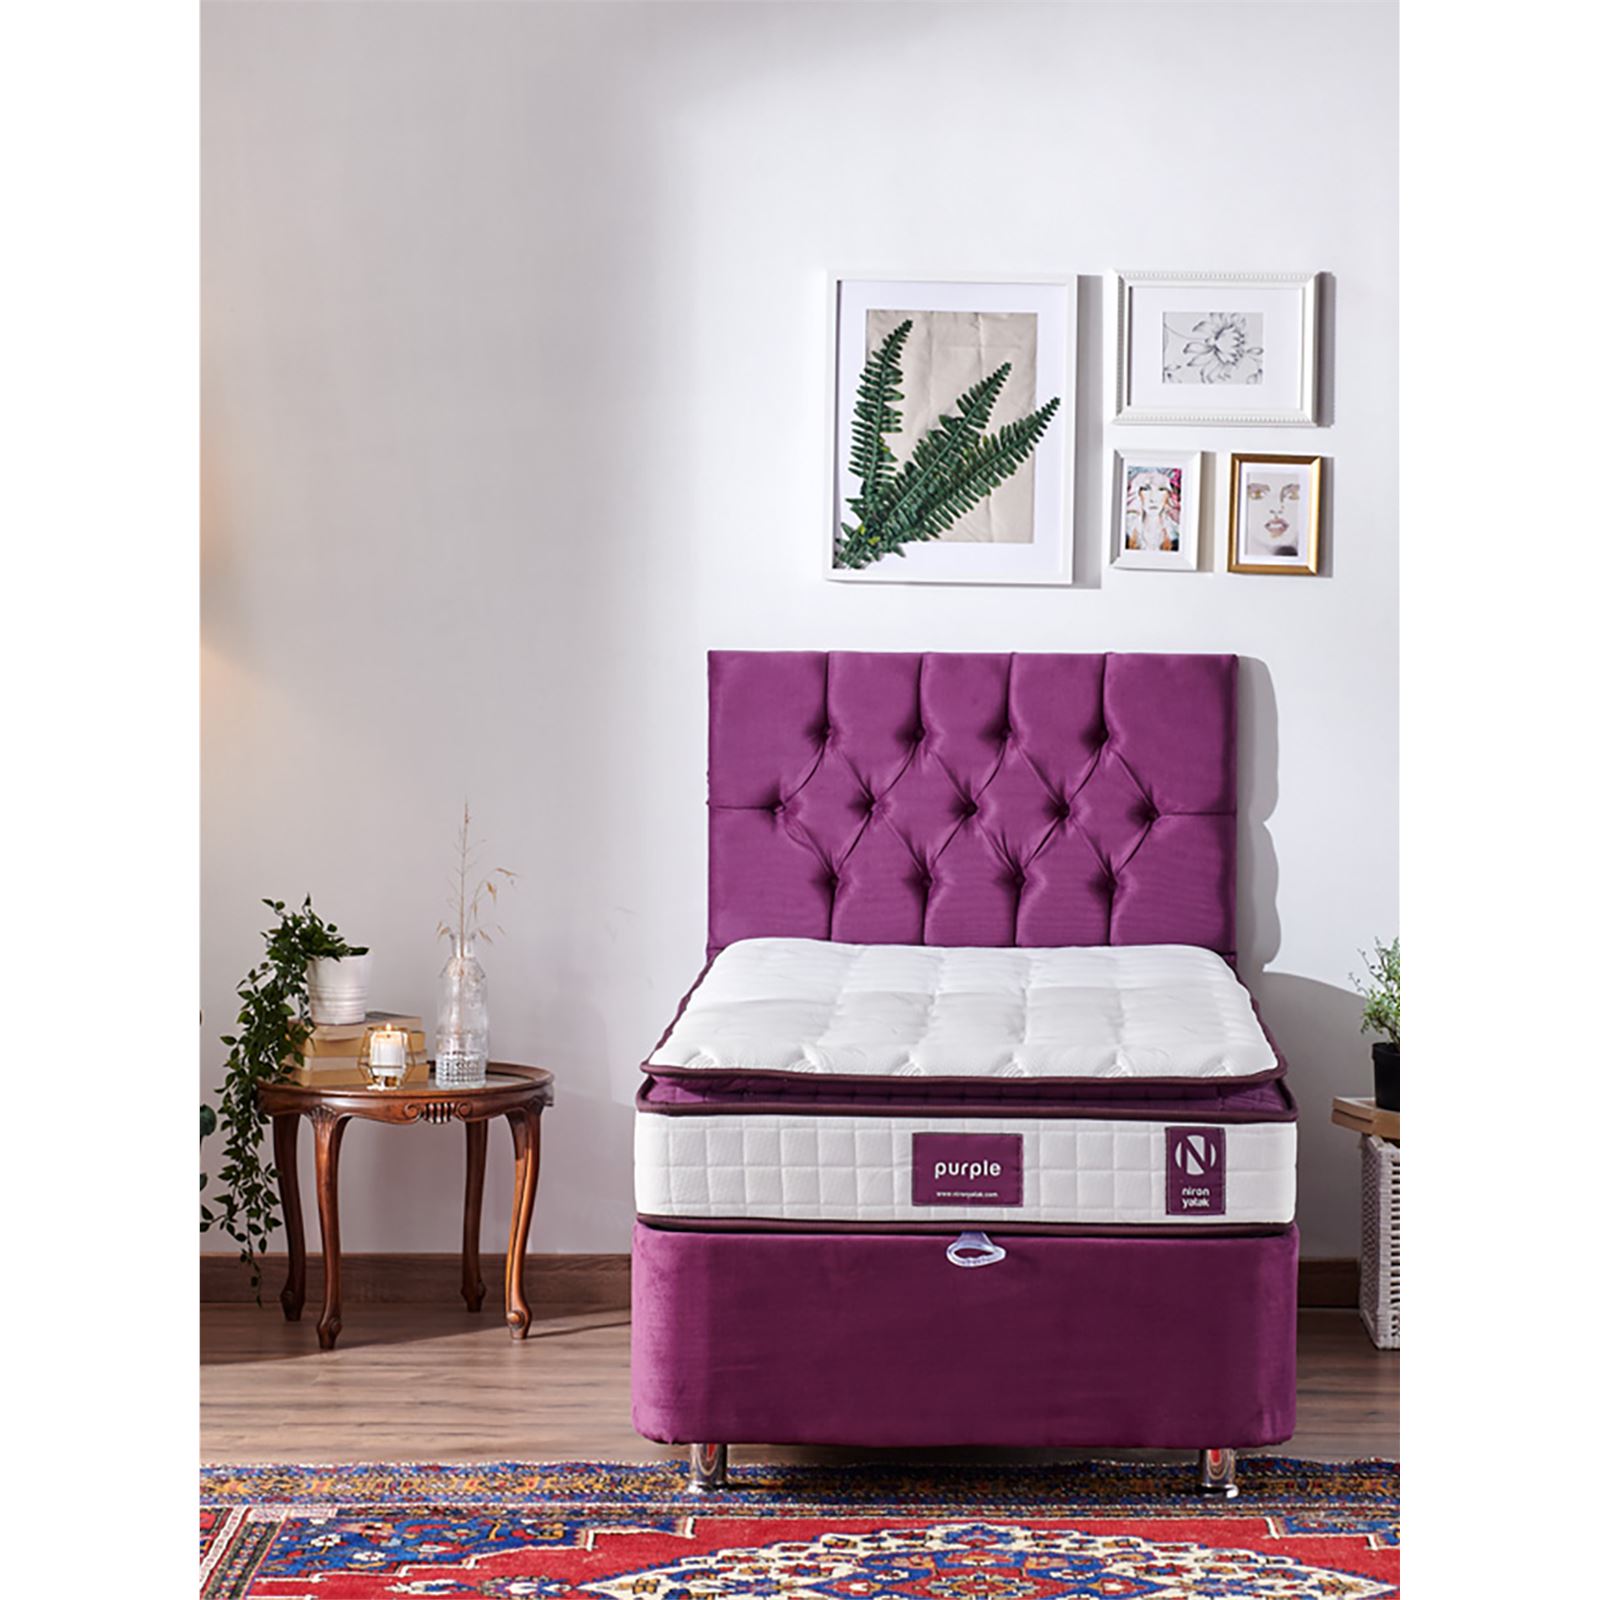 Niron Purple Yatak Seti 80x180 cm Tek Kişilik Yatak Baza Başlık Takımı Orta Sert Yatak Baza ve Başlığı Mor